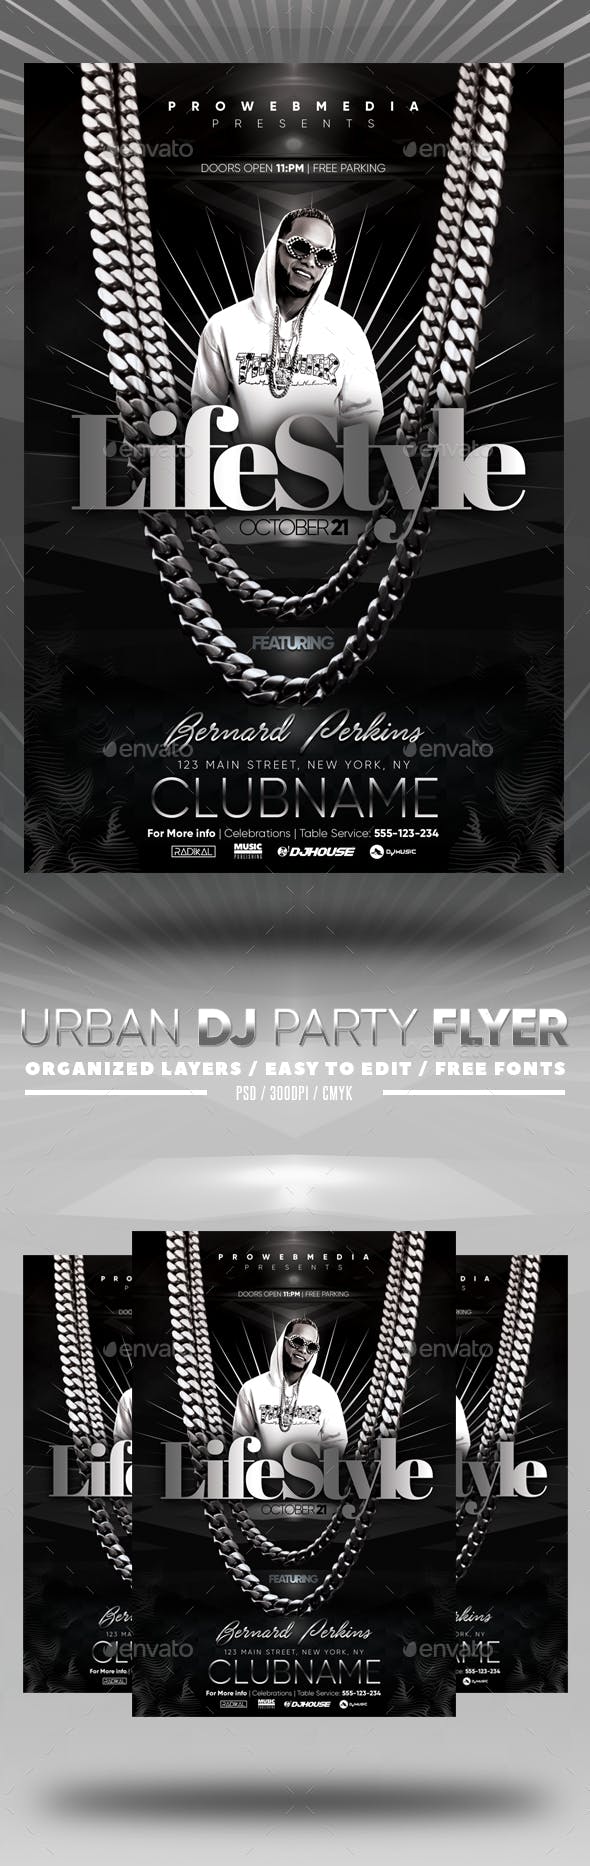 高端华丽音乐风格的DJ海报模板 Urban DJ Party Flyer [psd]插图